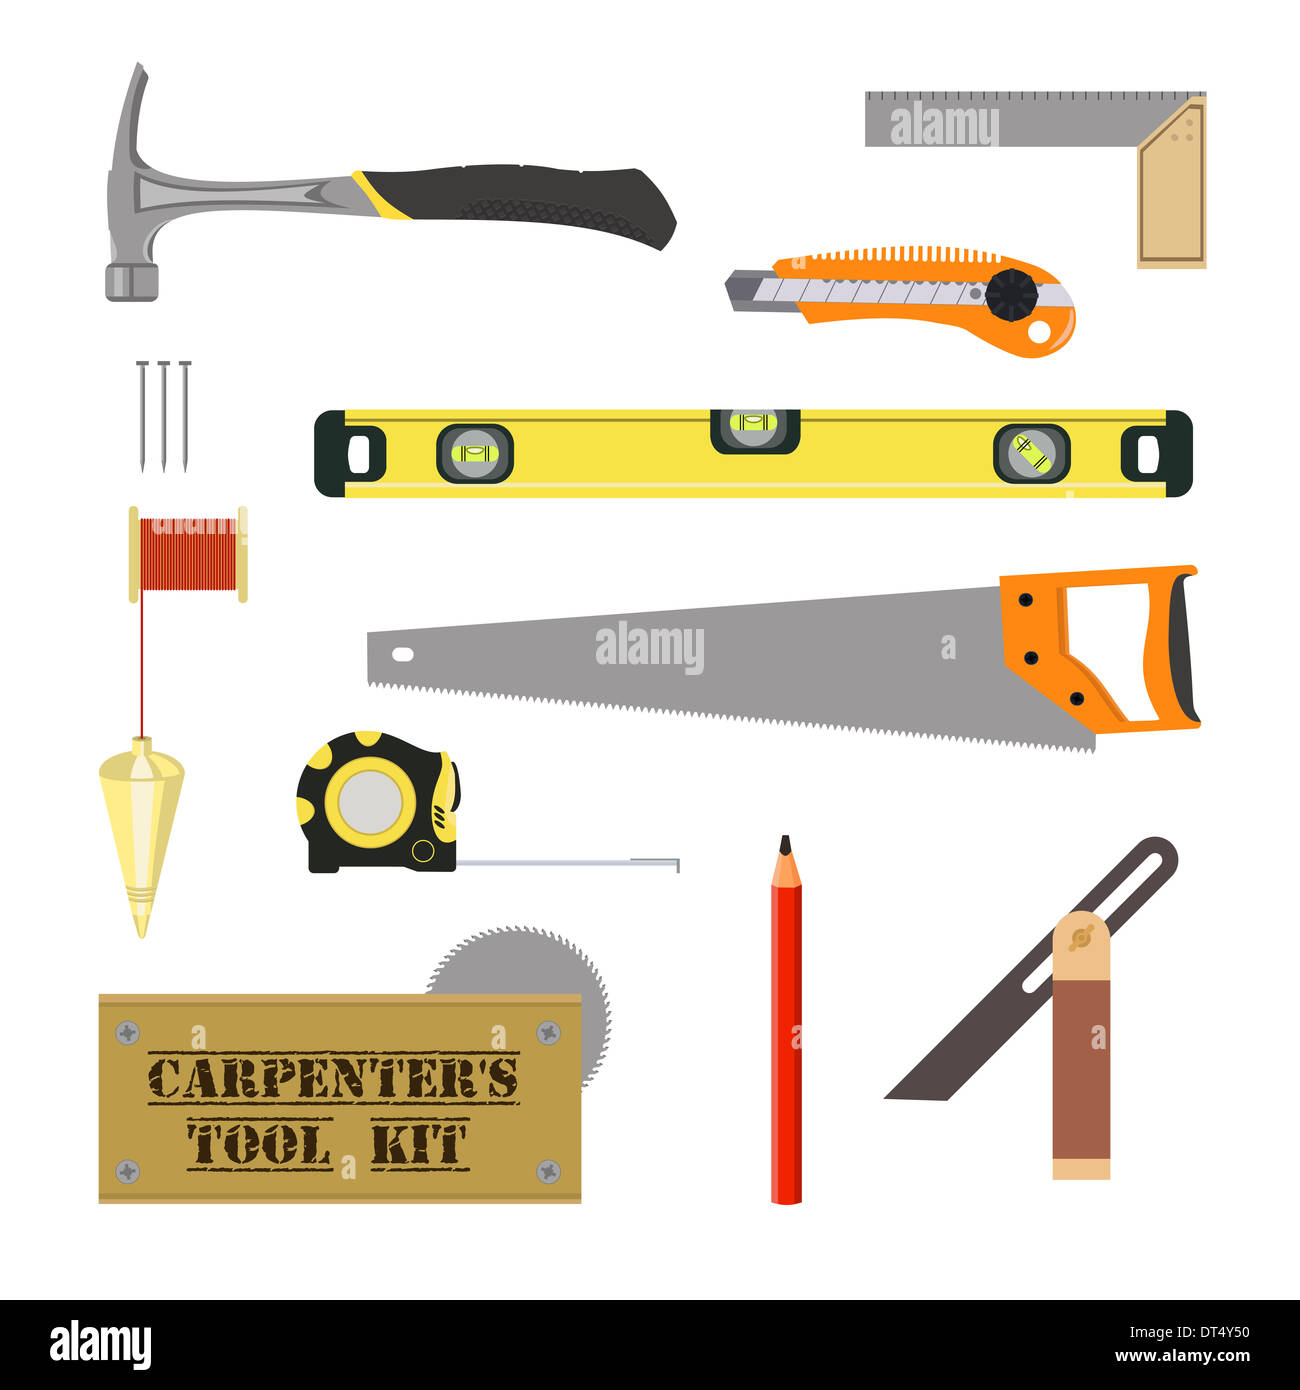 Outils de charpentier image stock. Image du matériel - 28874631